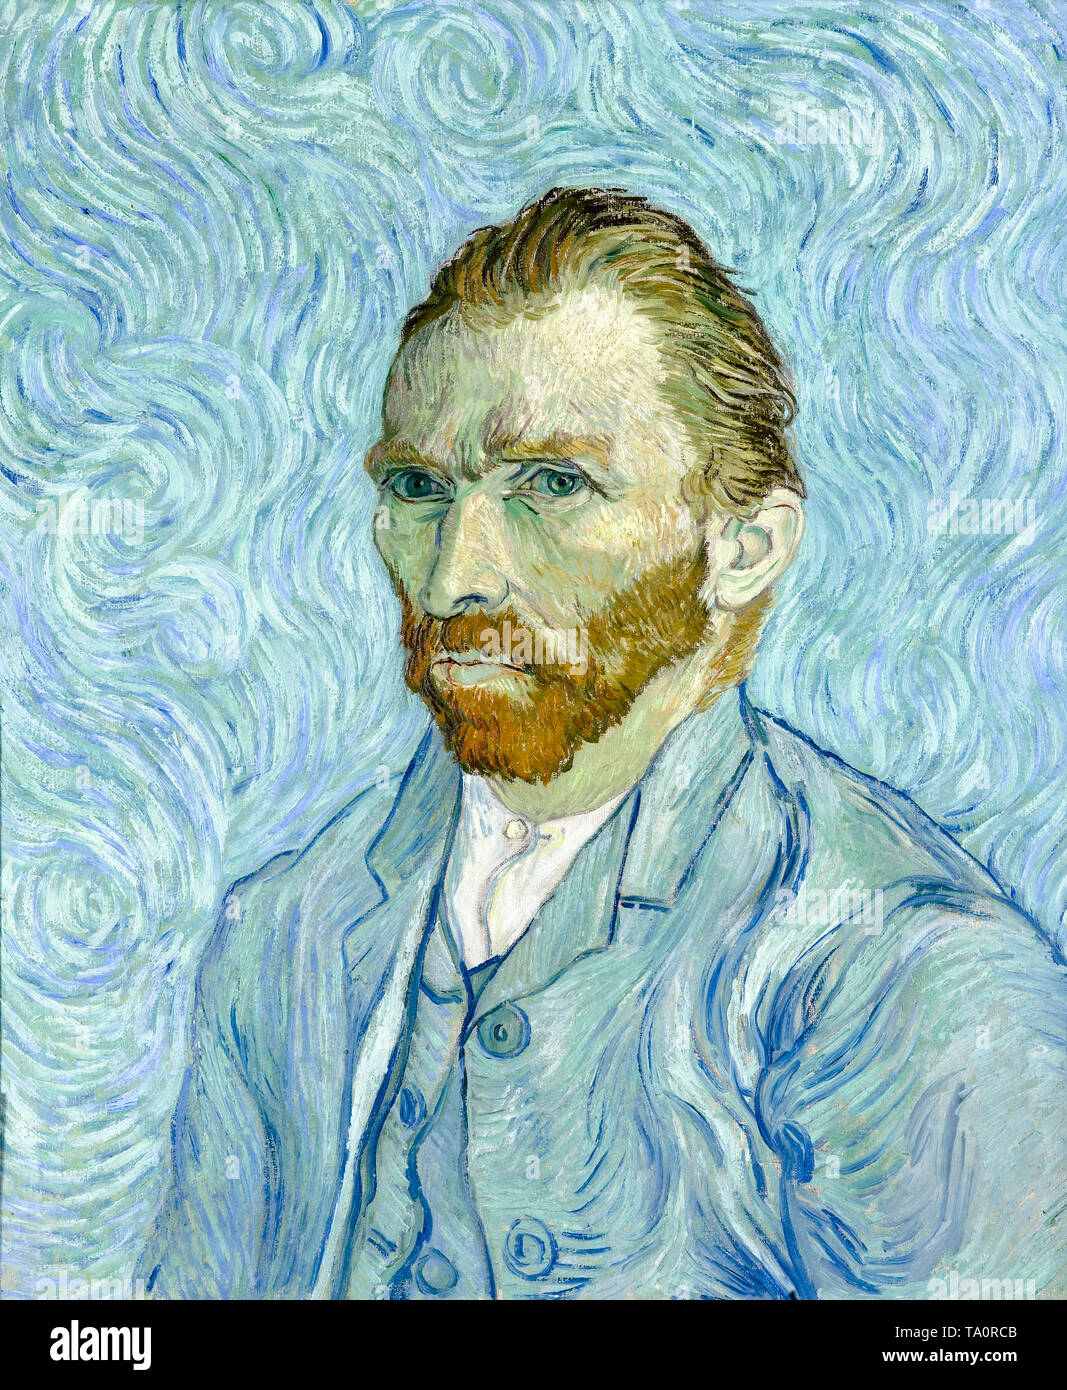 Vincent van Gogh, autoportrait, peinture post-impressionniste, 1889 Banque D'Images